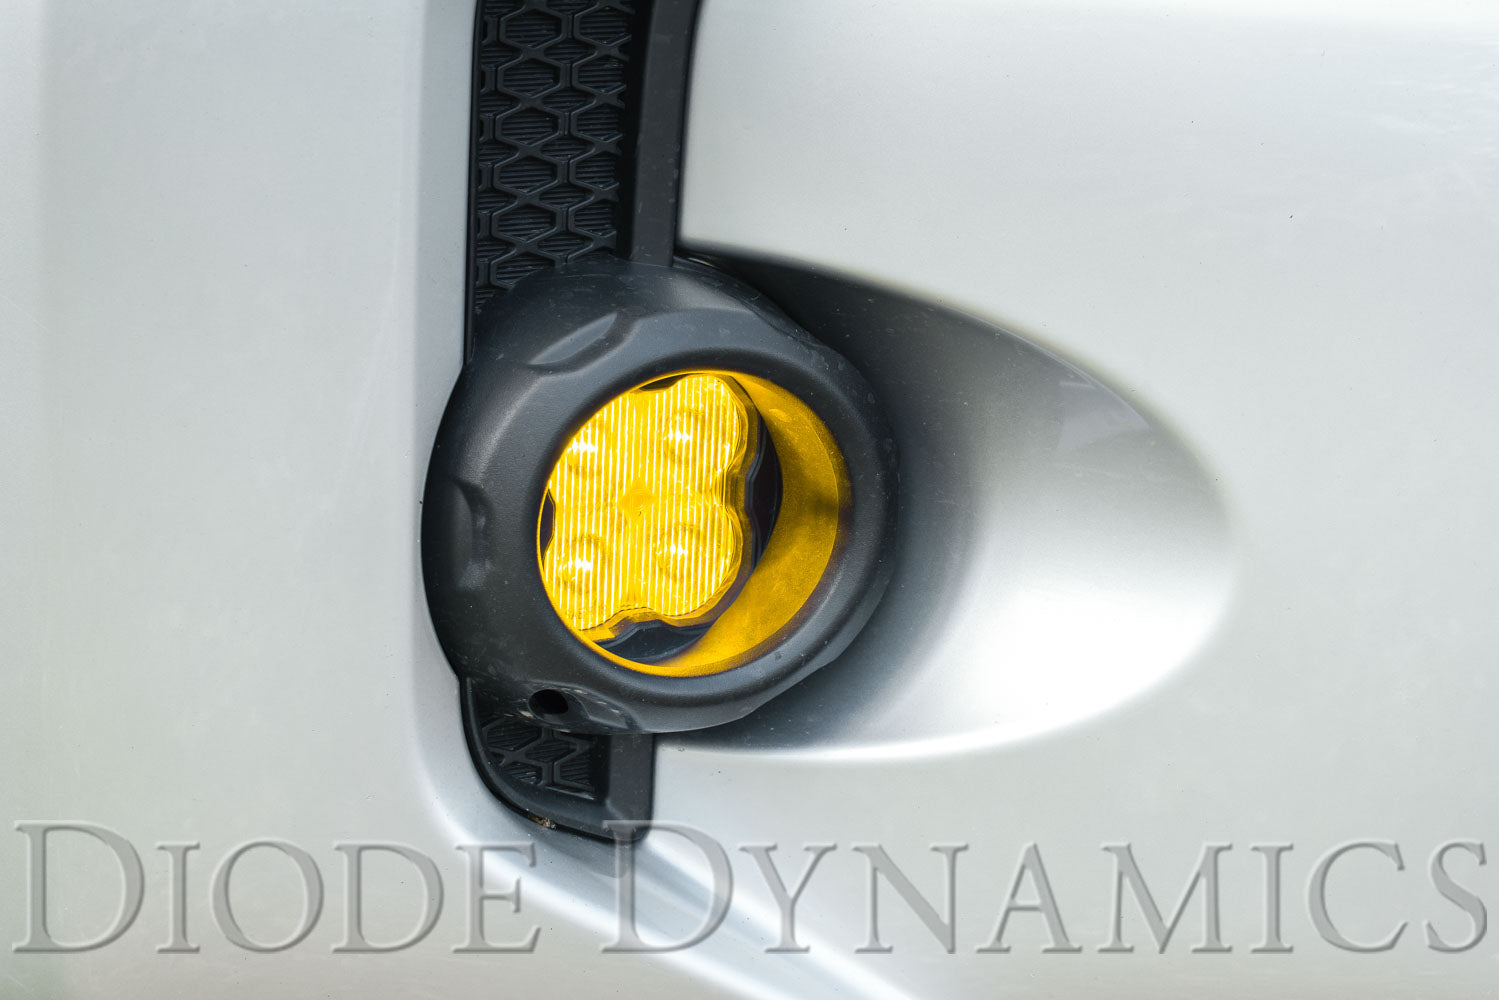 SS3 LED Fog Light Kit for 2010-2021 Toyota 4Runner White SAE Fog Sport w/ Backlight Diode Dynamics